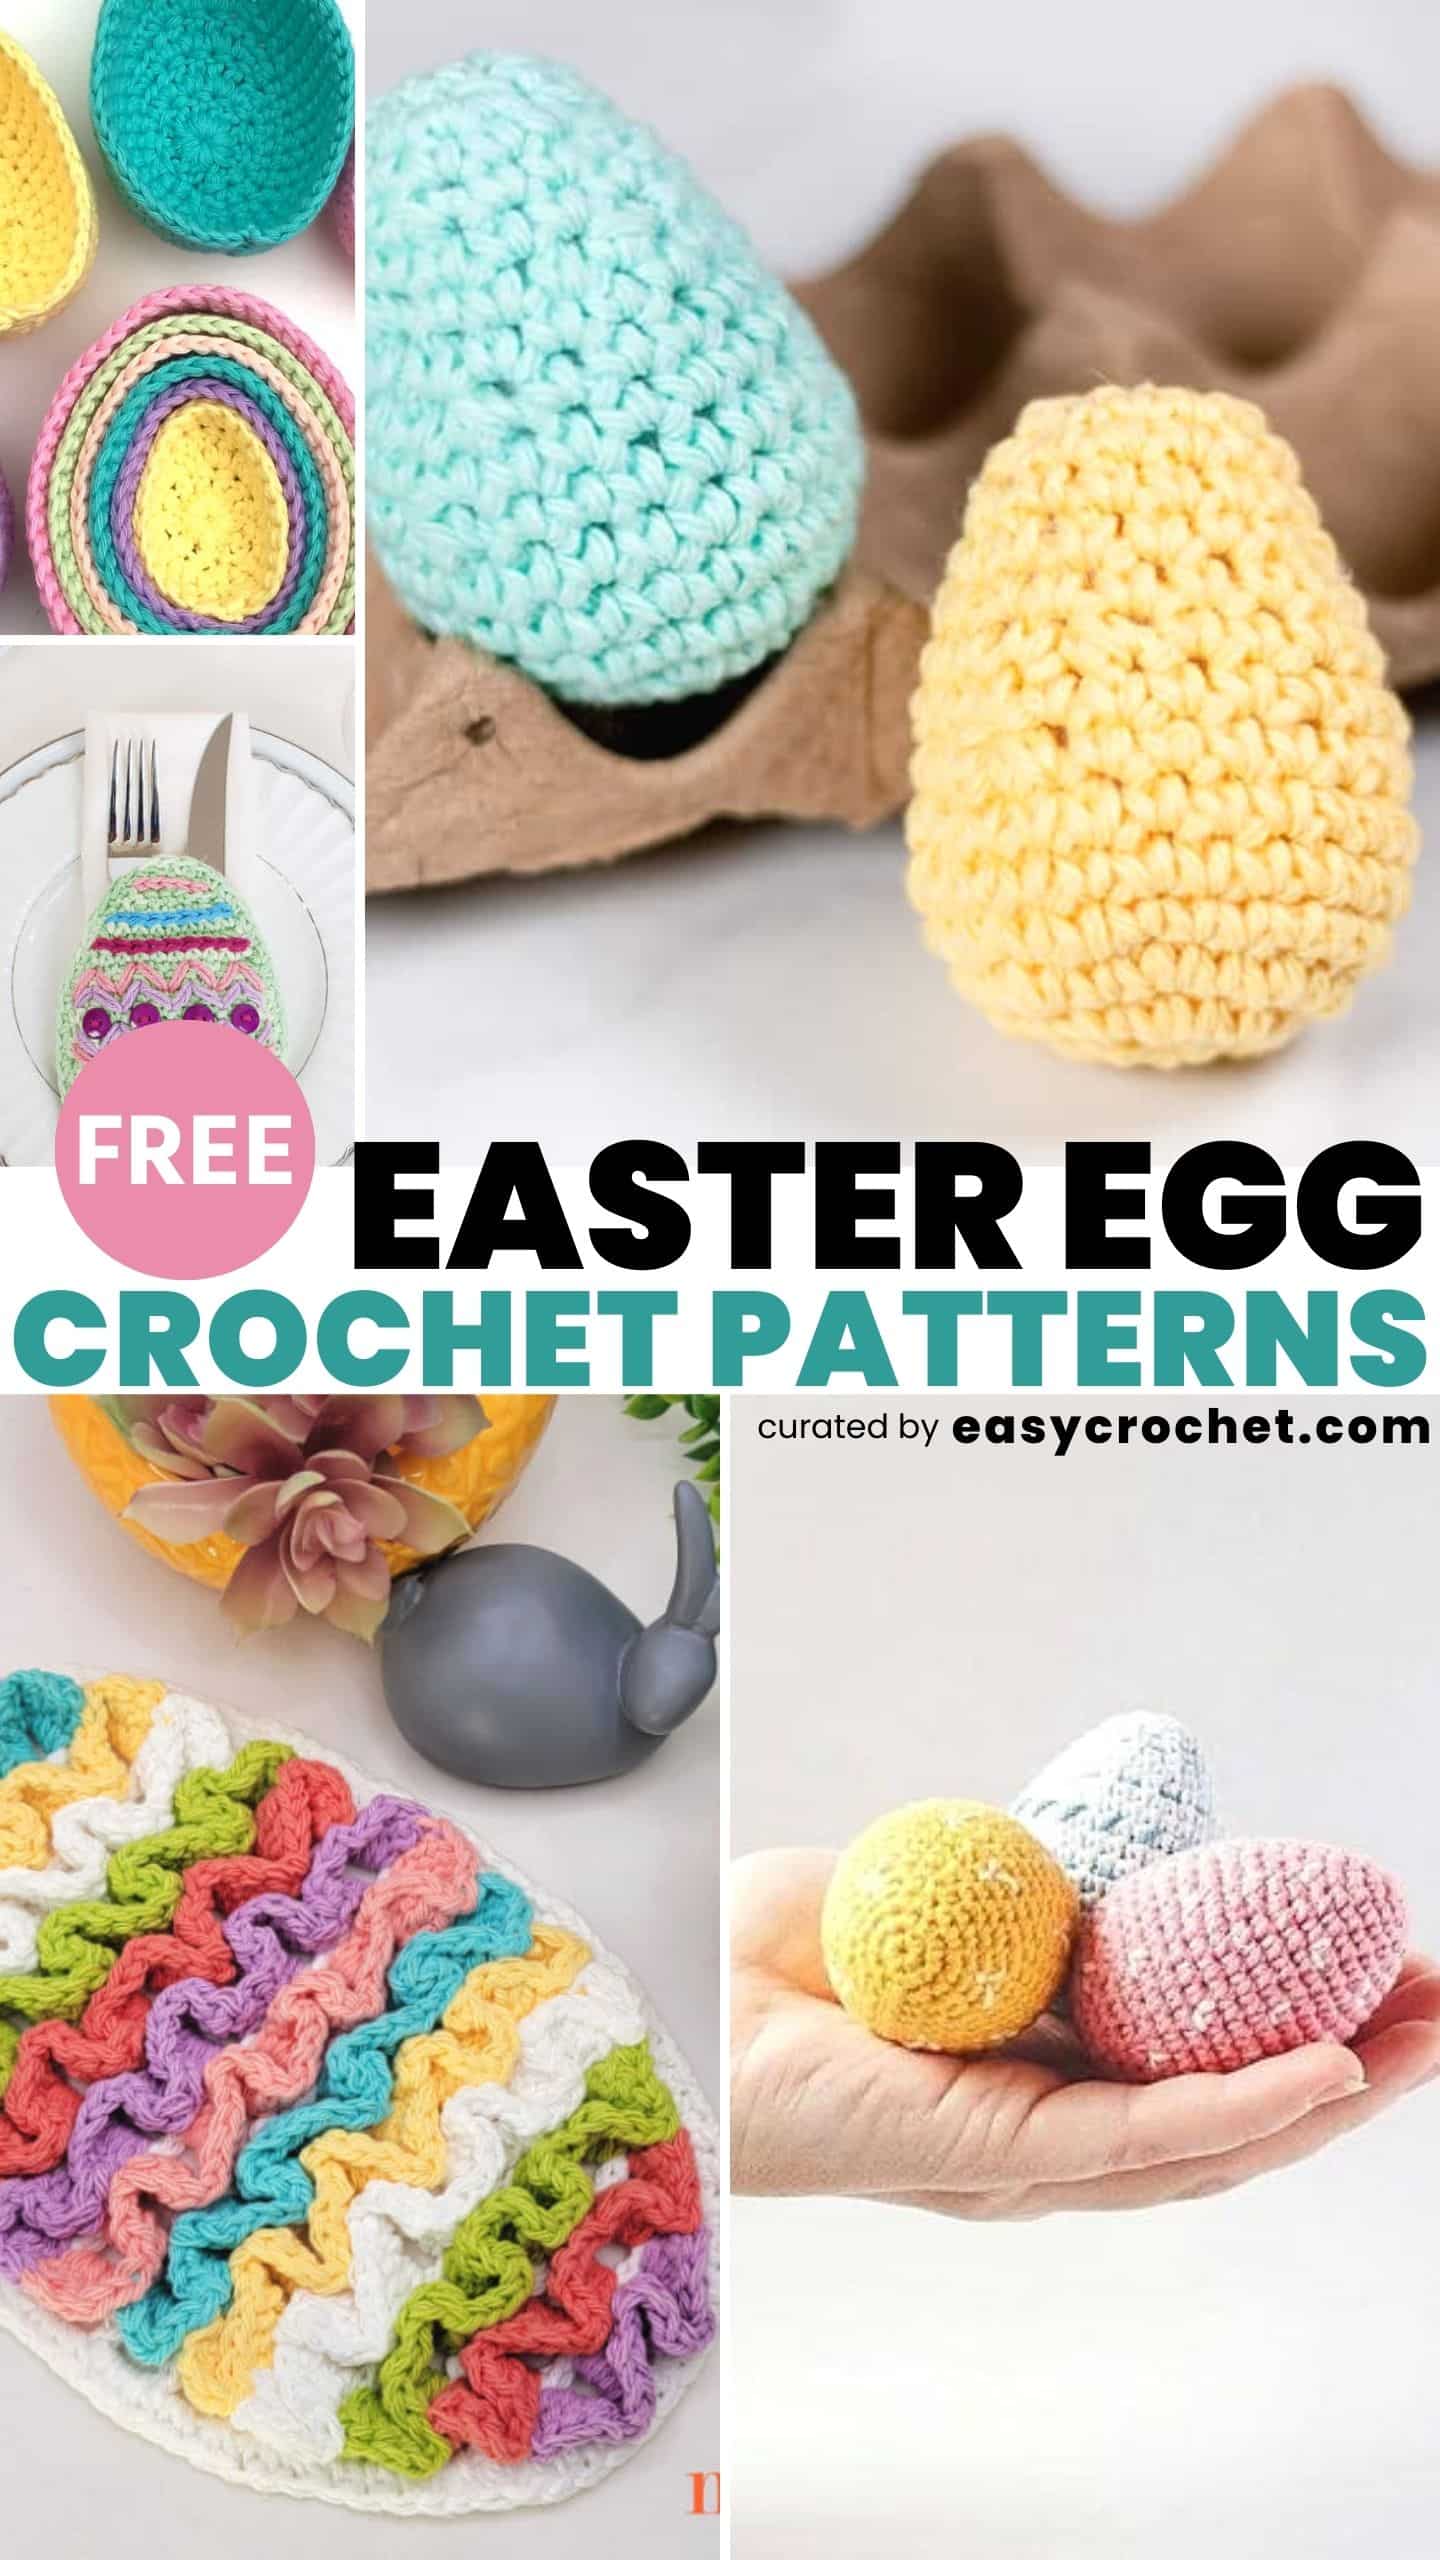 10 Best Crochet Easter Egg Patterns - Easy Crochet Patterns